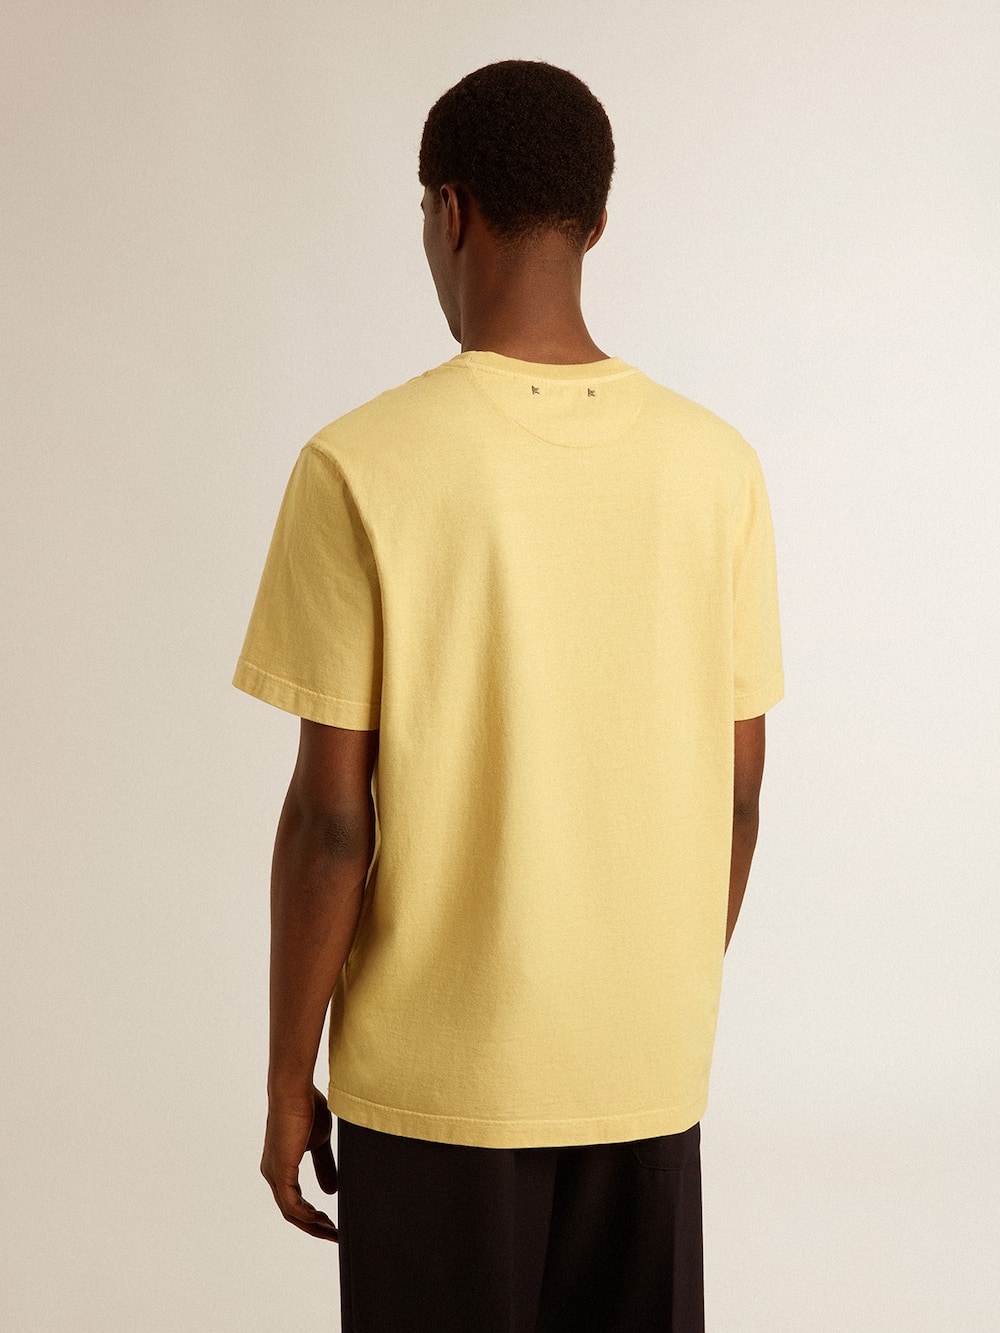 Golden Goose - Camiseta de hombre en algodón color amarillo pálido con mensaje descolorido in 